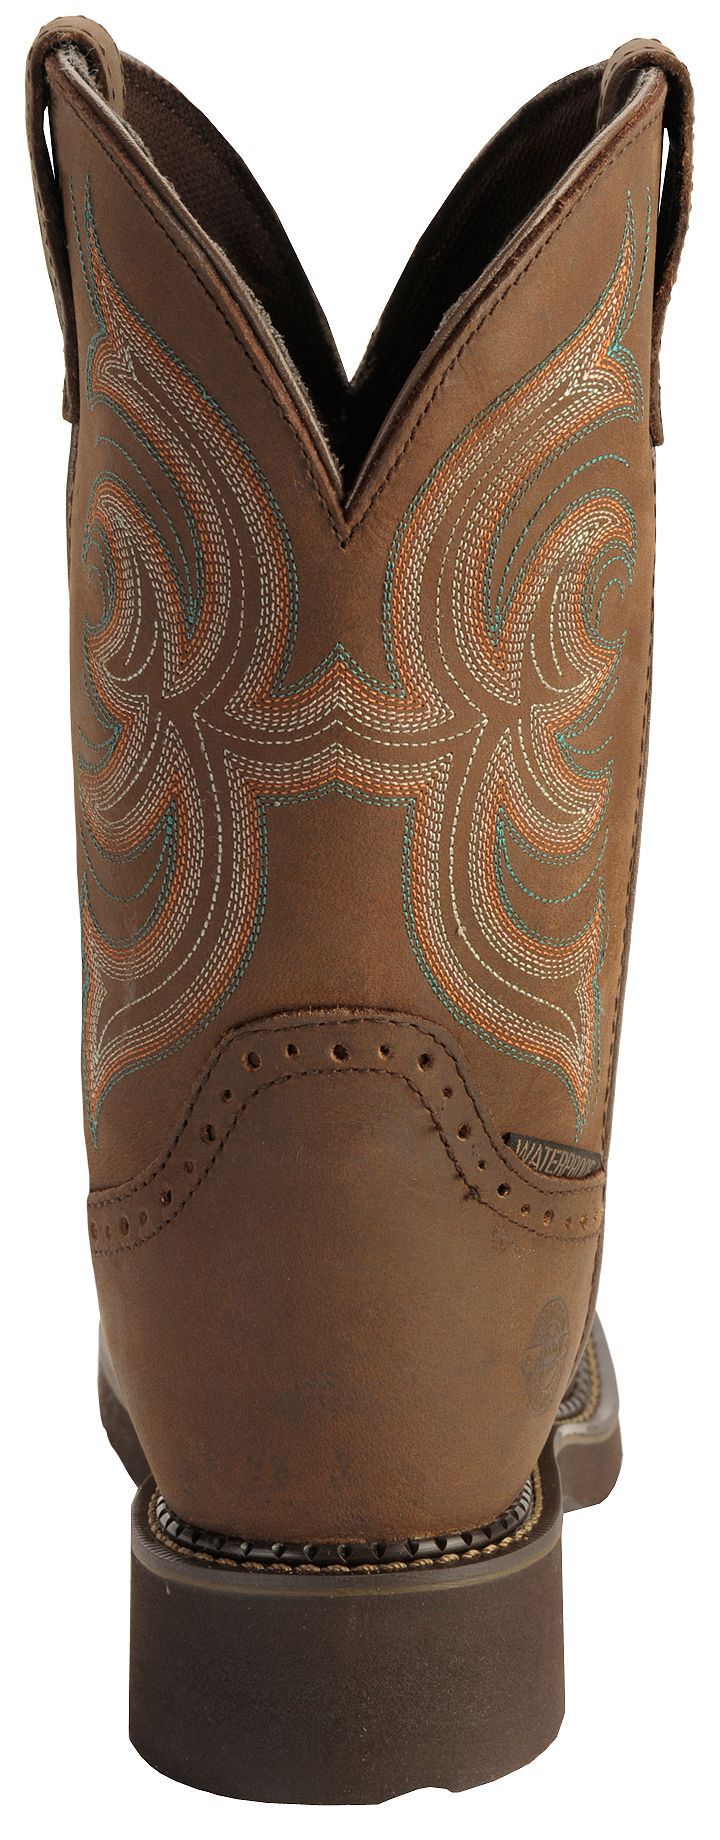 justin gypsy women's waterproof steel toe work boots